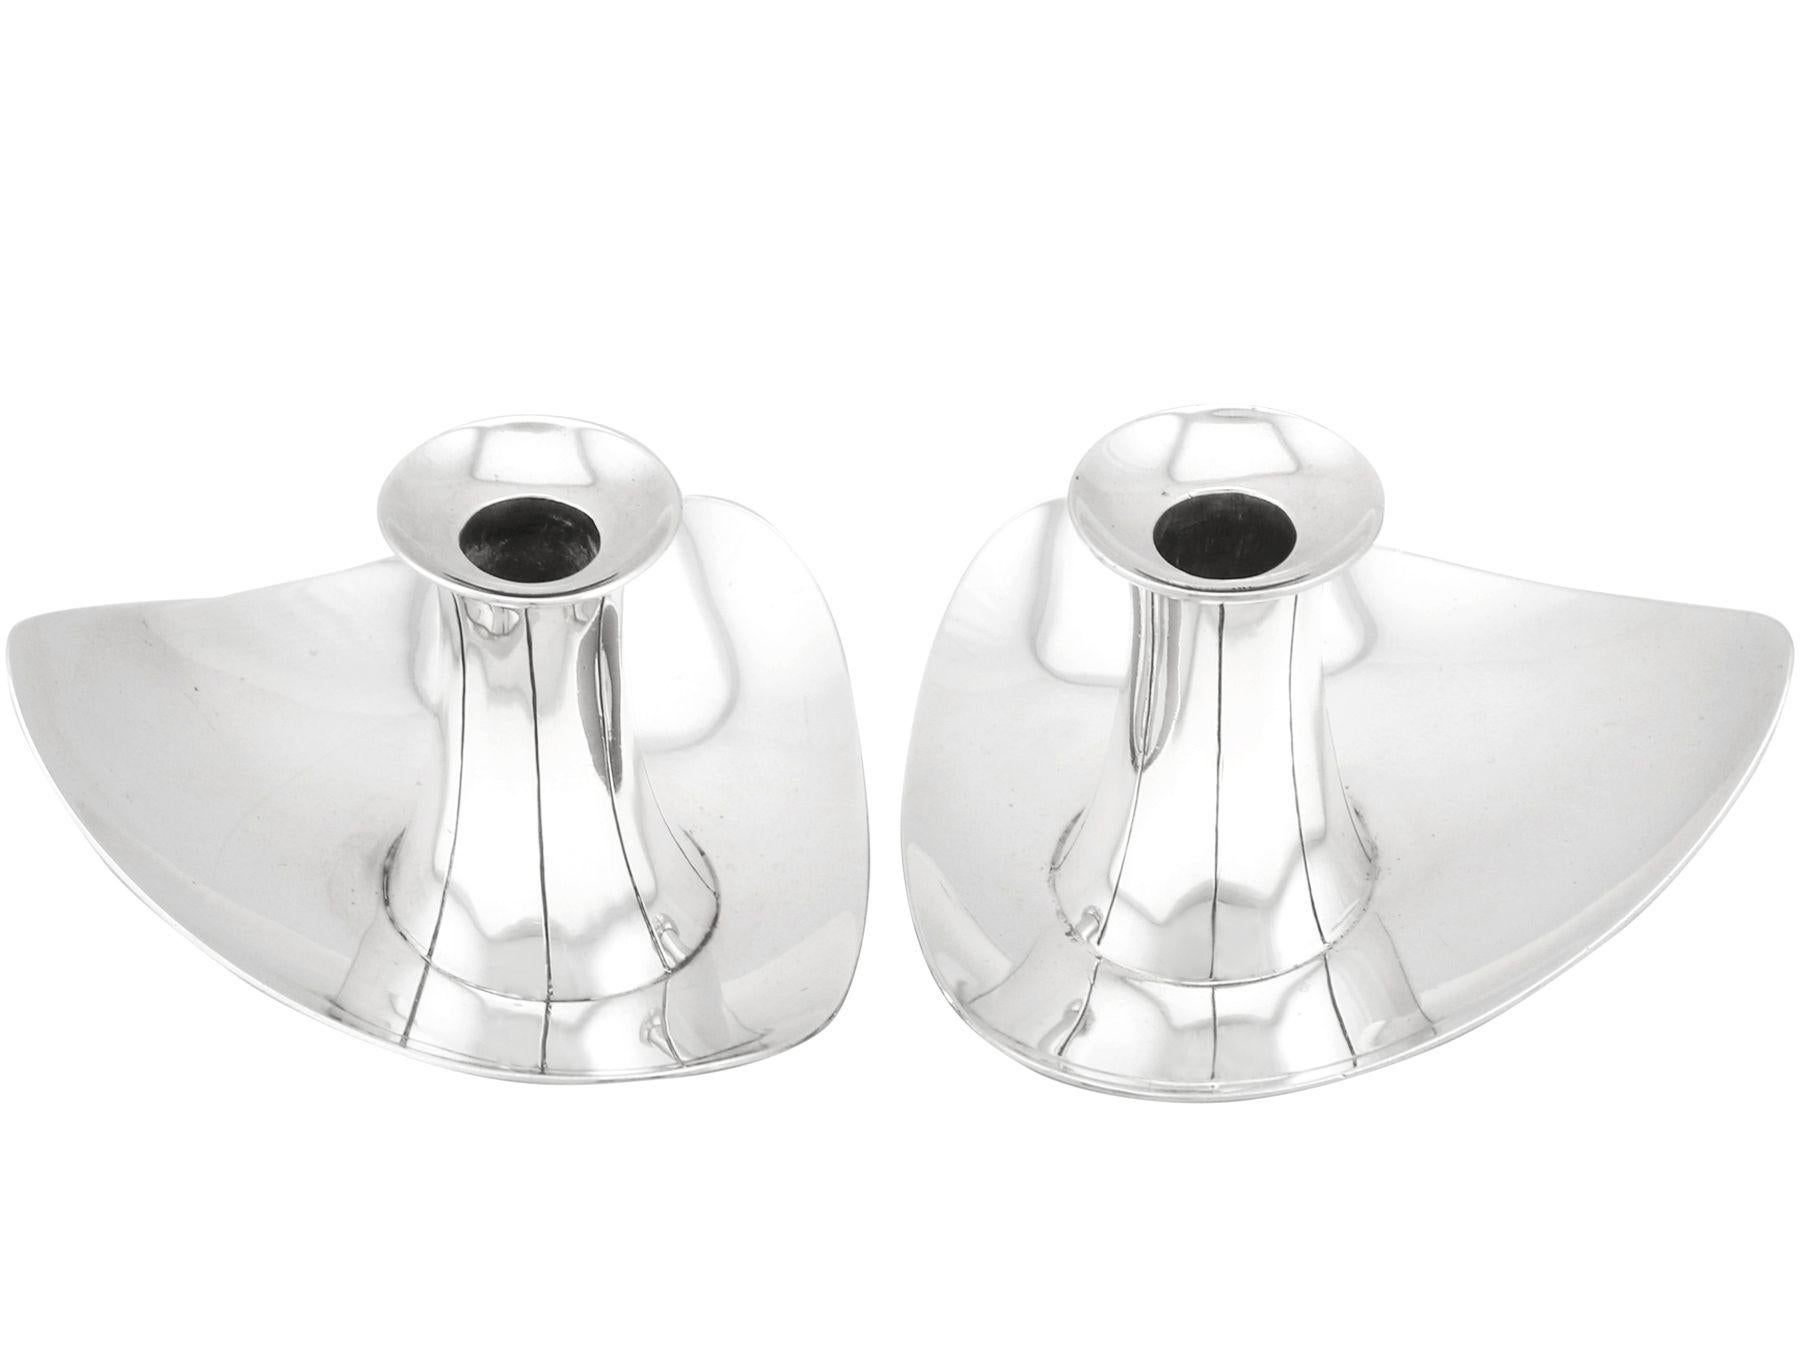 Ein außergewöhnliches, feines und beeindruckendes Paar englischer Sterlingsilber-Kerzenleuchter im Design-Stil; eine Ergänzung zu unserer Sammlung von Ziersilberwaren.

Diese außergewöhnlichen kleinen silbernen Vintage-Kerzenhalter aus Sterling